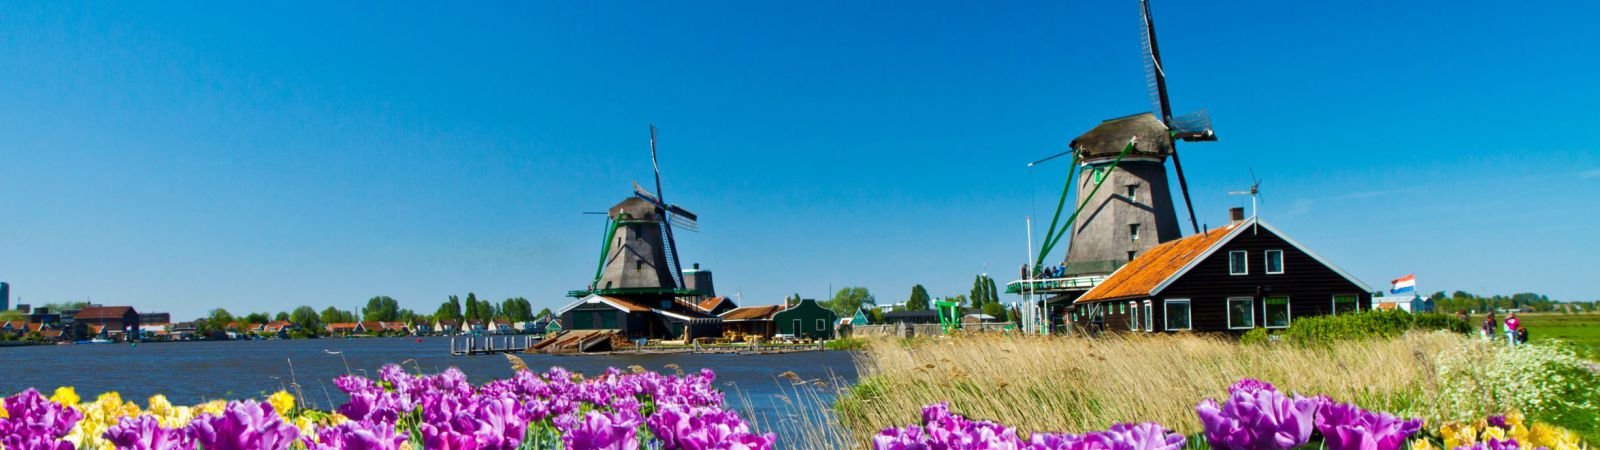 Nederland fietsen langs molens